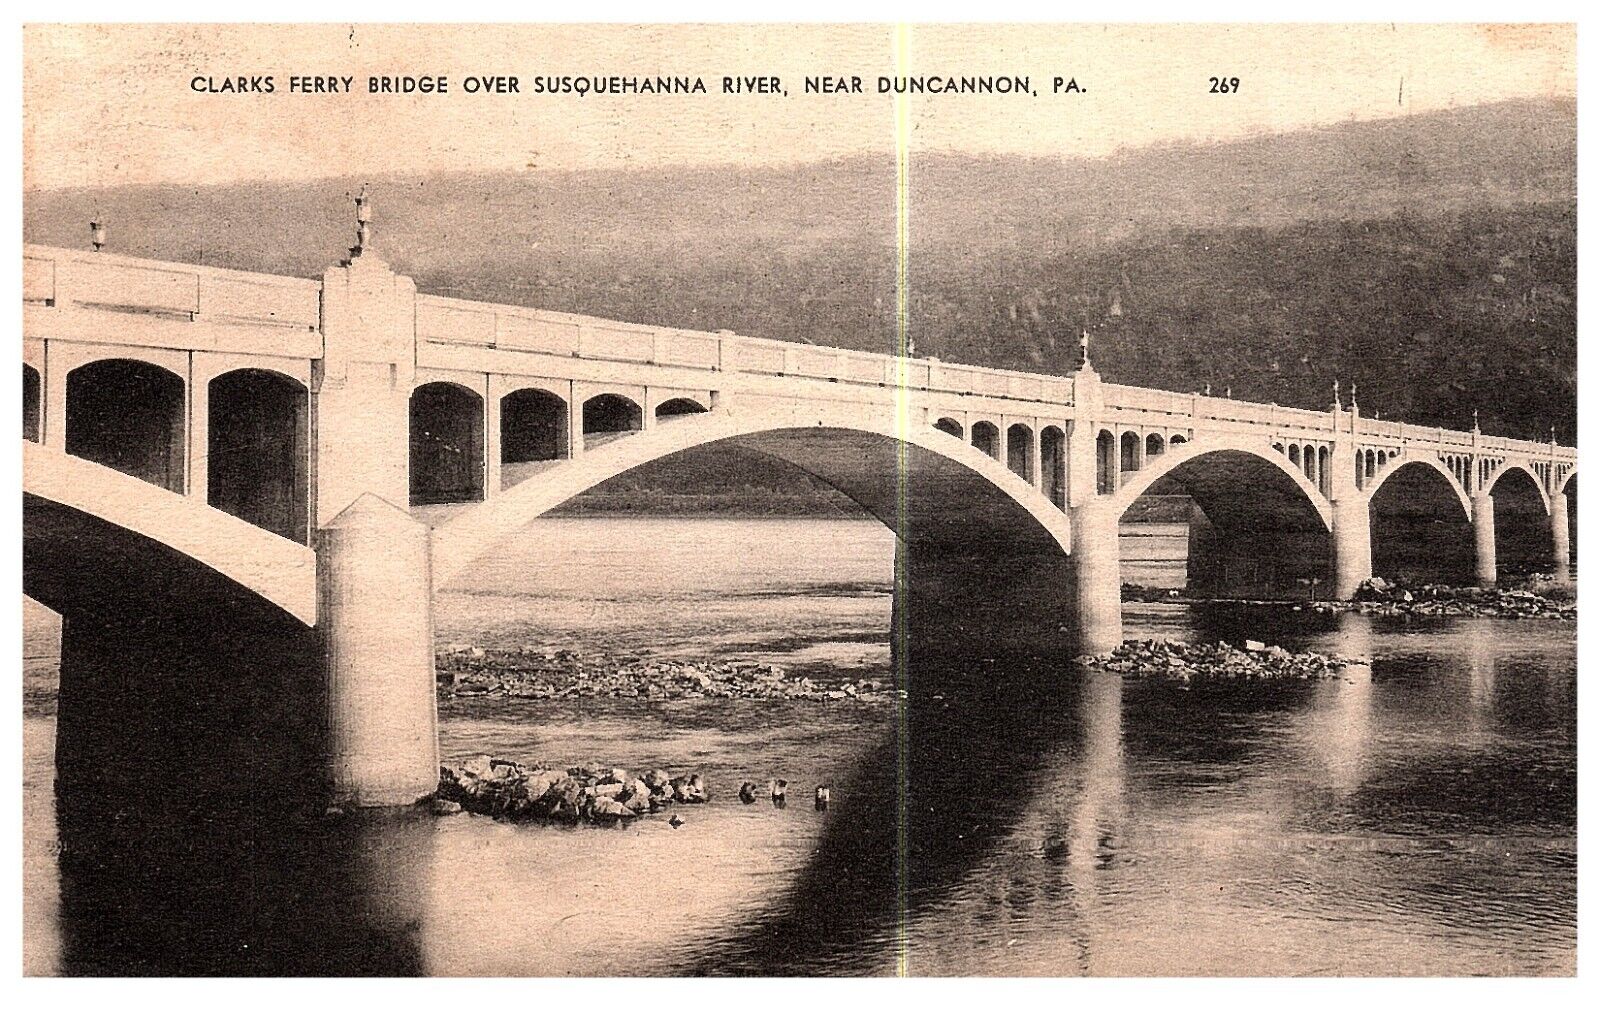 DUNCANNON PA - CLARKS FERRY BRIDGE OVER SUSQUEHANNA RIVER - Postcard